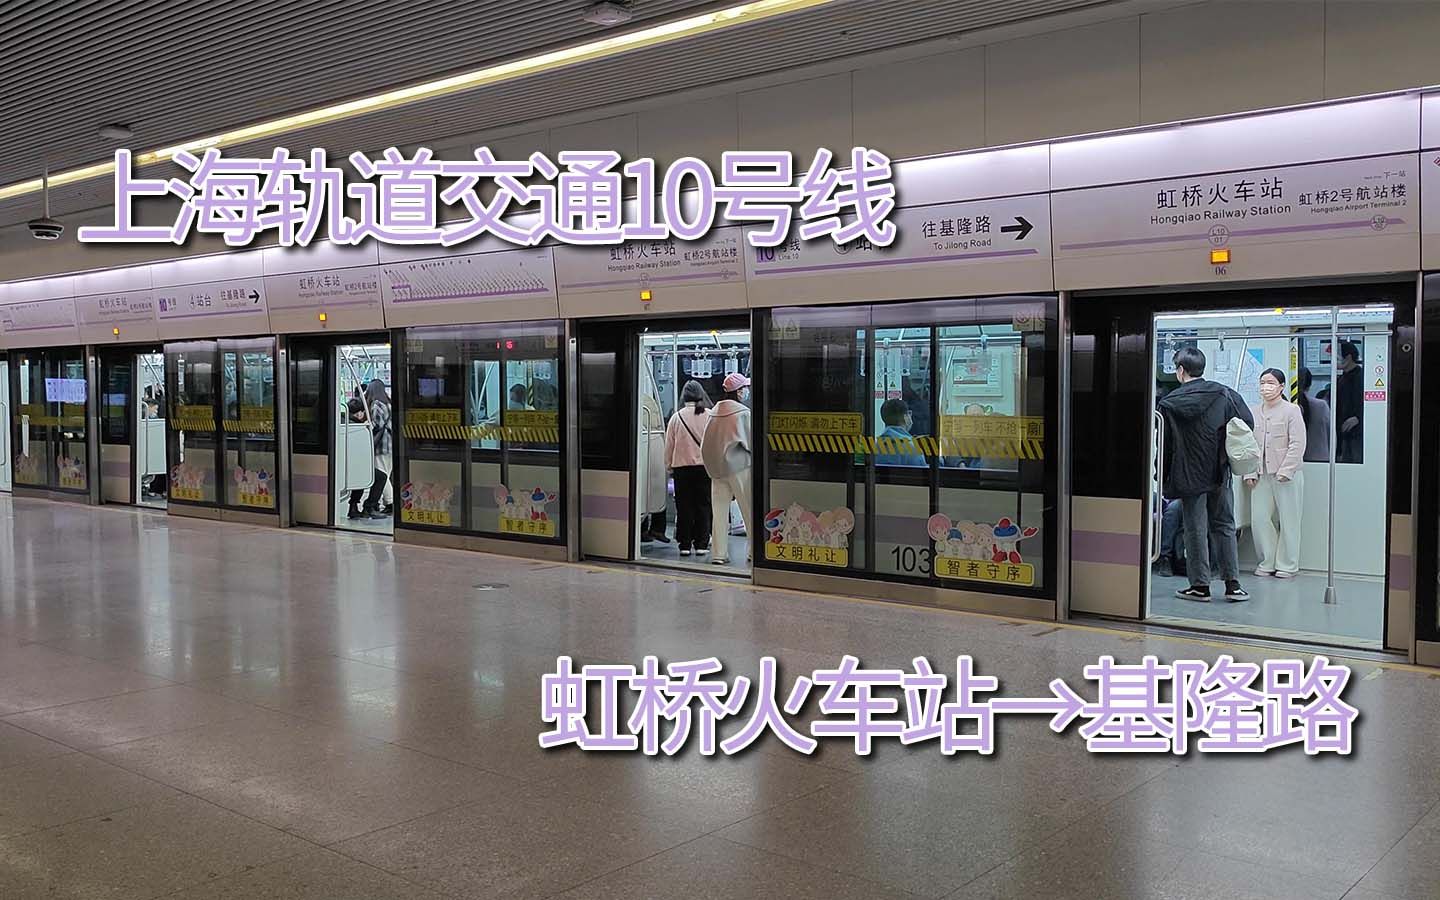 【第一视角pov】上海轨道交通10号线 虹桥火车站→基隆路